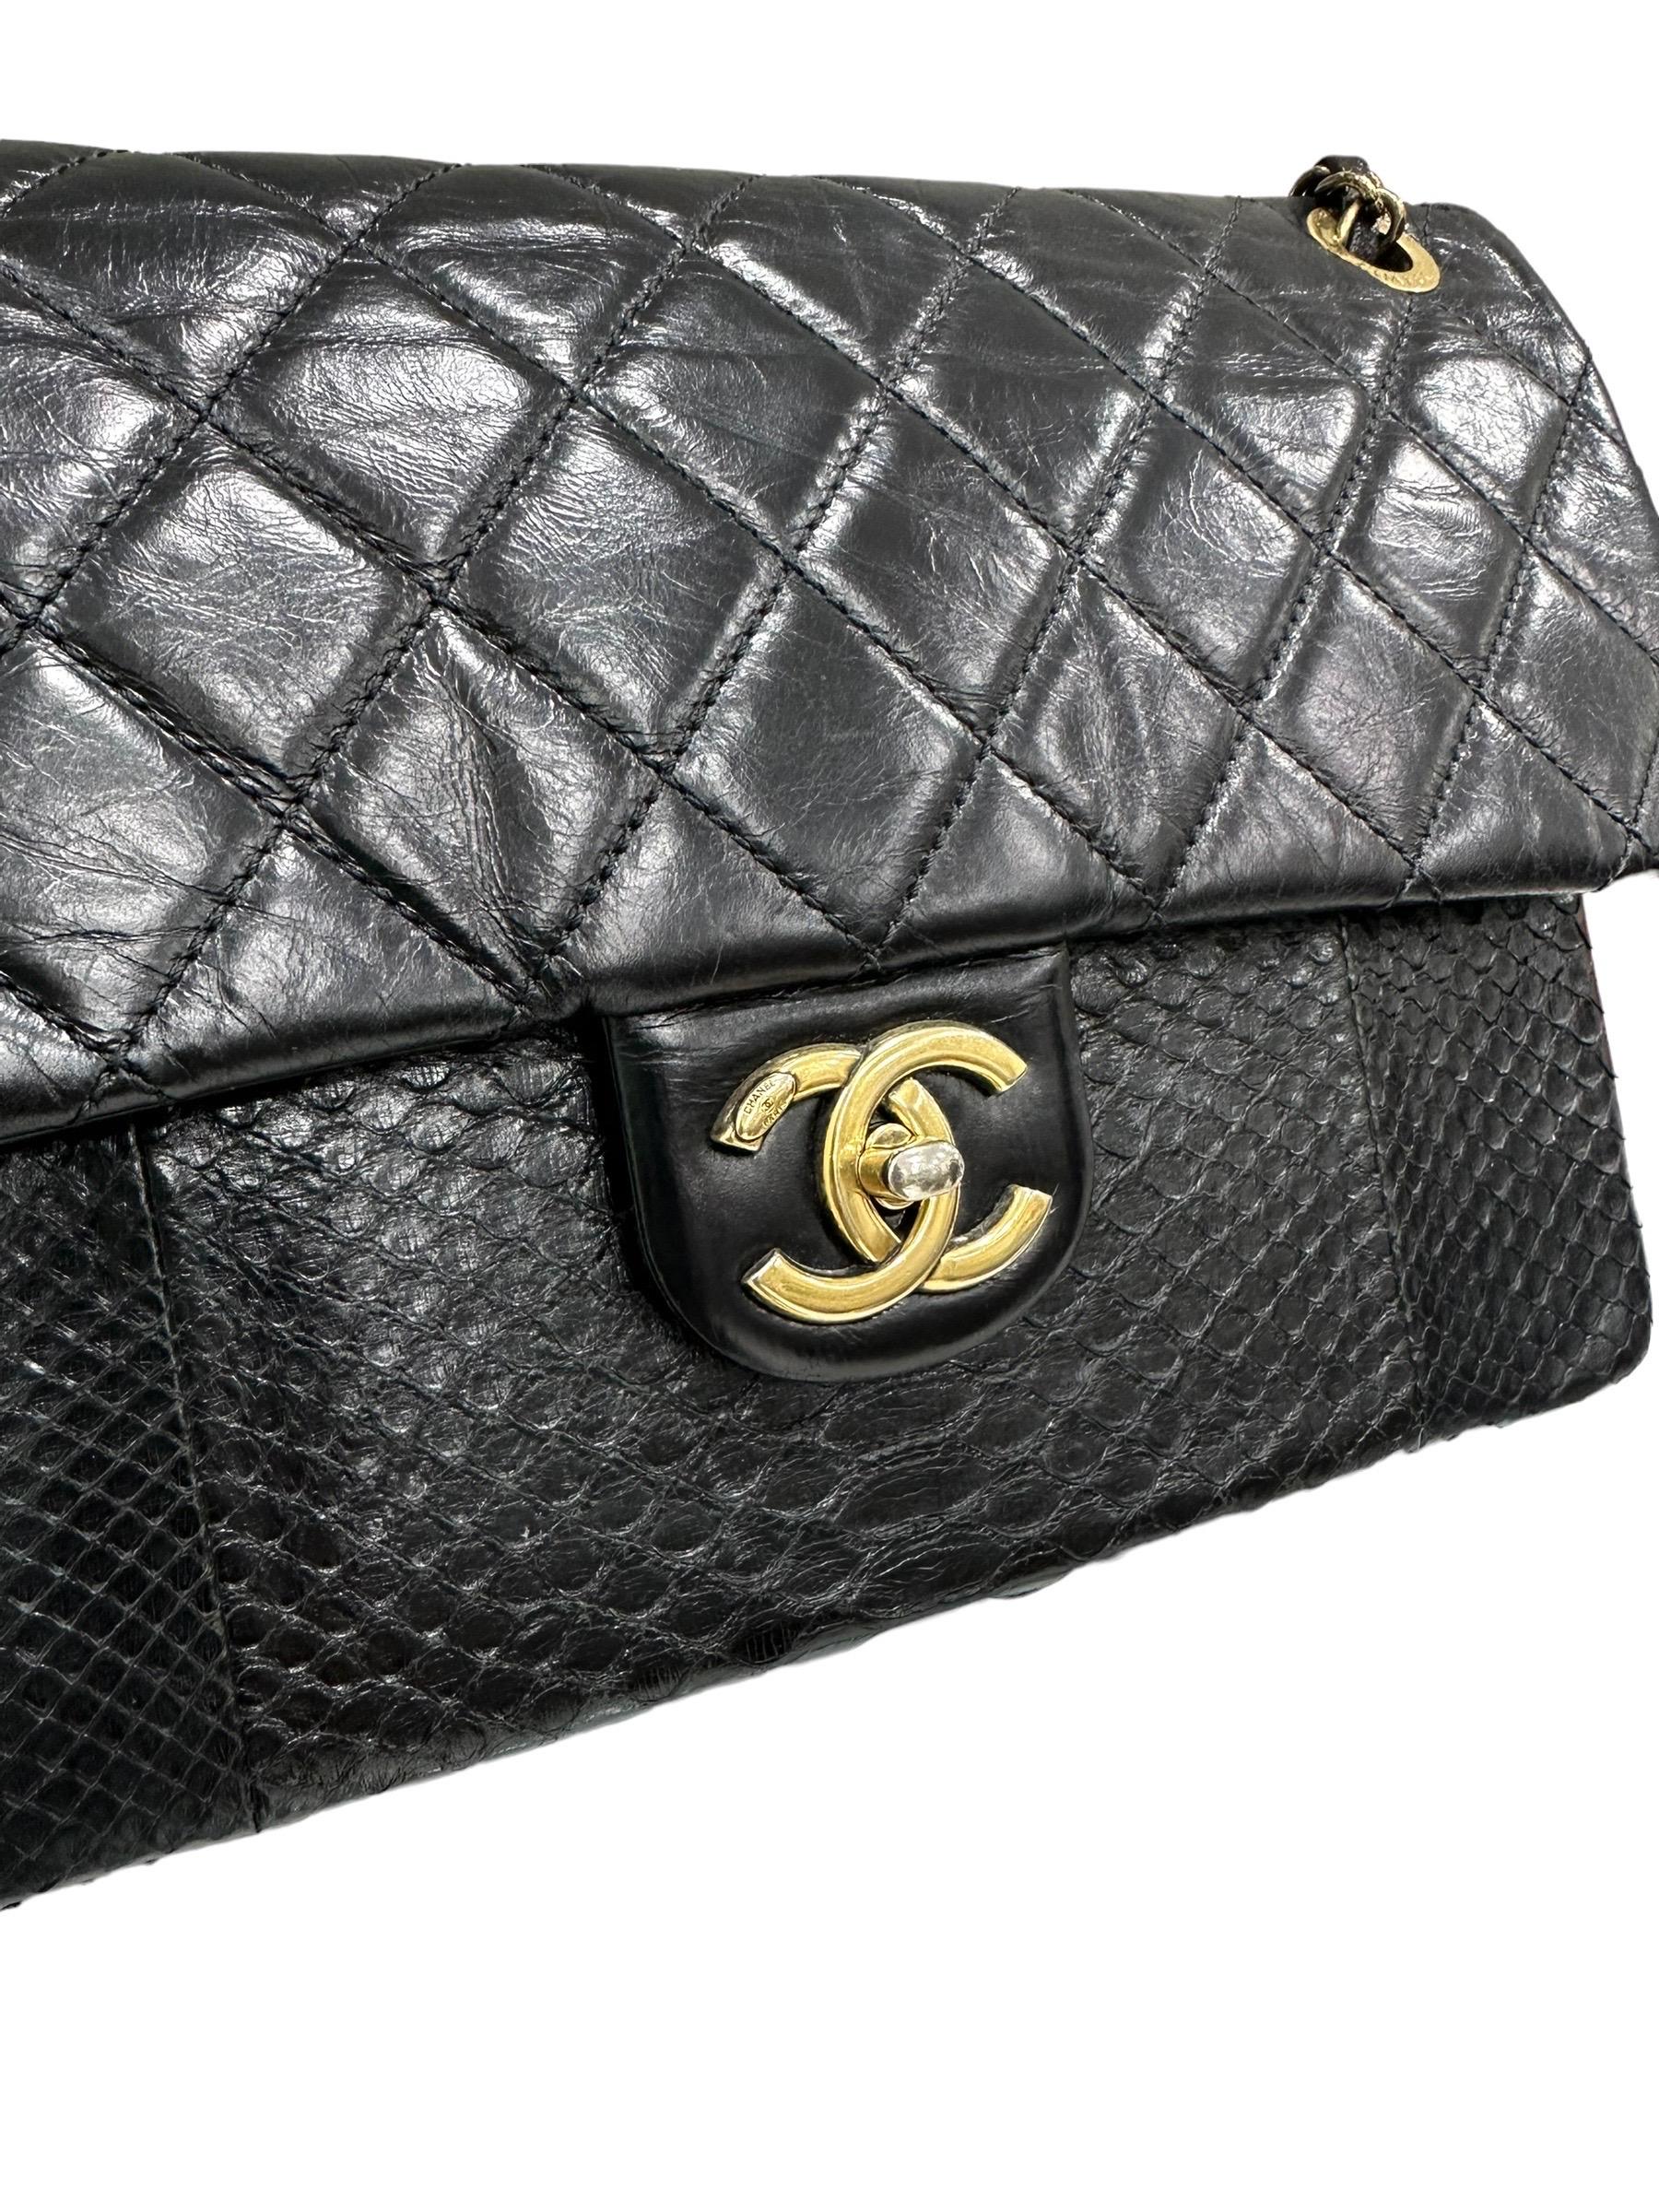 Le sac à bandoulière à rabat en cuir matelassé noir et mélange urbain de python de Chanel présente une jolie forme, avec un cuir de veau foncé et une superbe poche plate sur le devant en peau de python. Des sangles entrelacées en cuir/chaîne et des